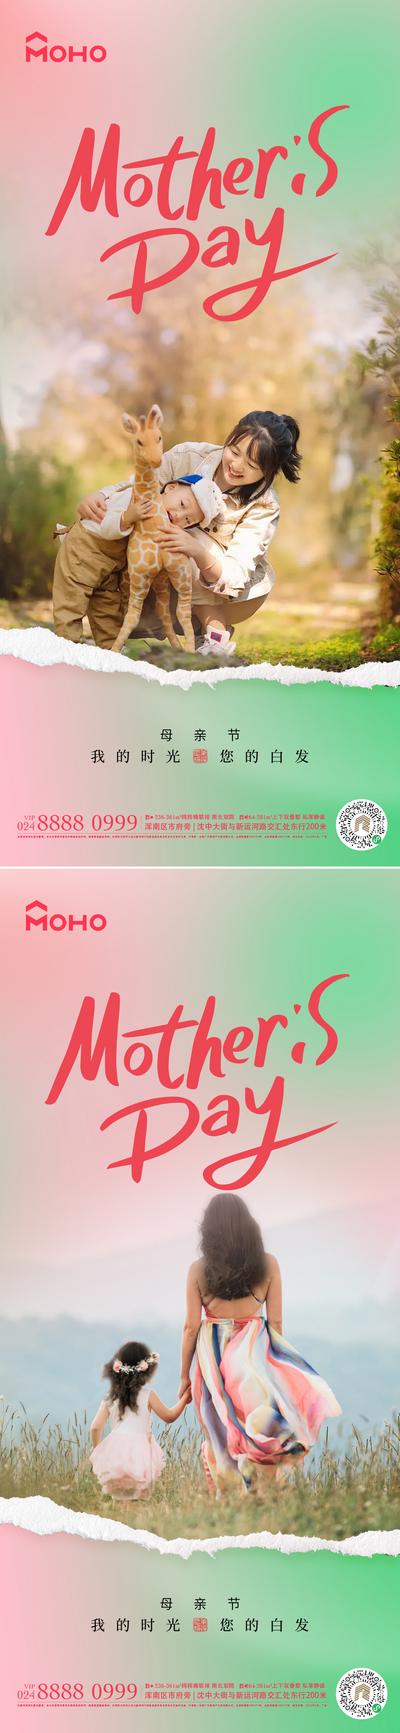 南门网 广告 海报 节日 母亲节 母亲 母女 母子 爱 母爱 感恩 拥抱 呵护 陪伴 鲜花 送花 花